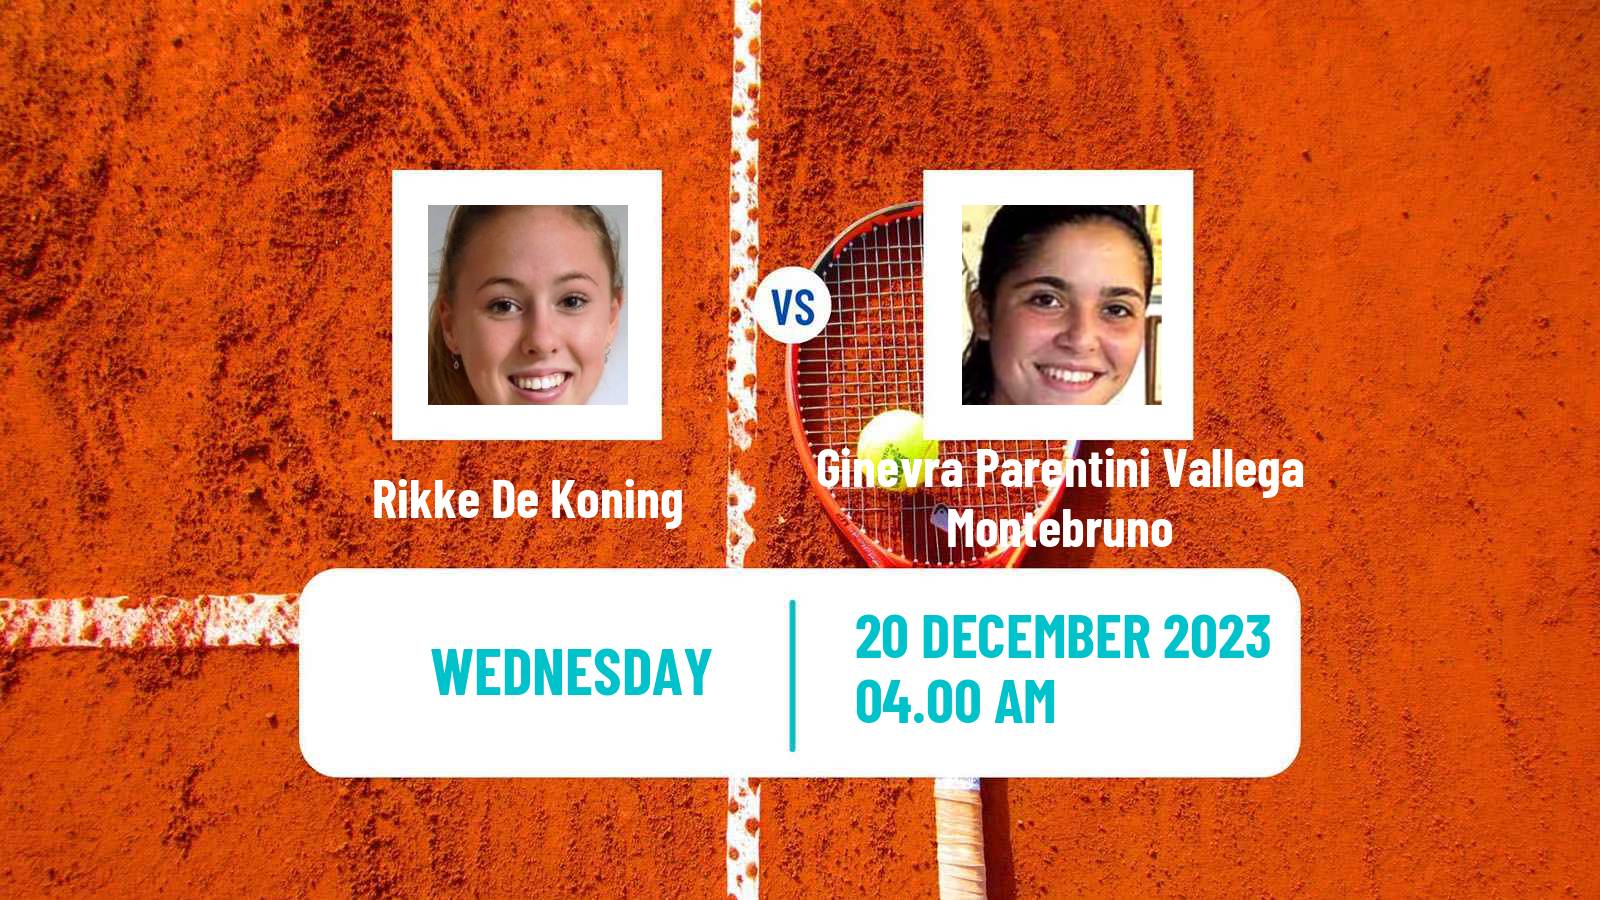 Tennis ITF W15 Antalya 23 Women Rikke De Koning - Ginevra Parentini Vallega Montebruno